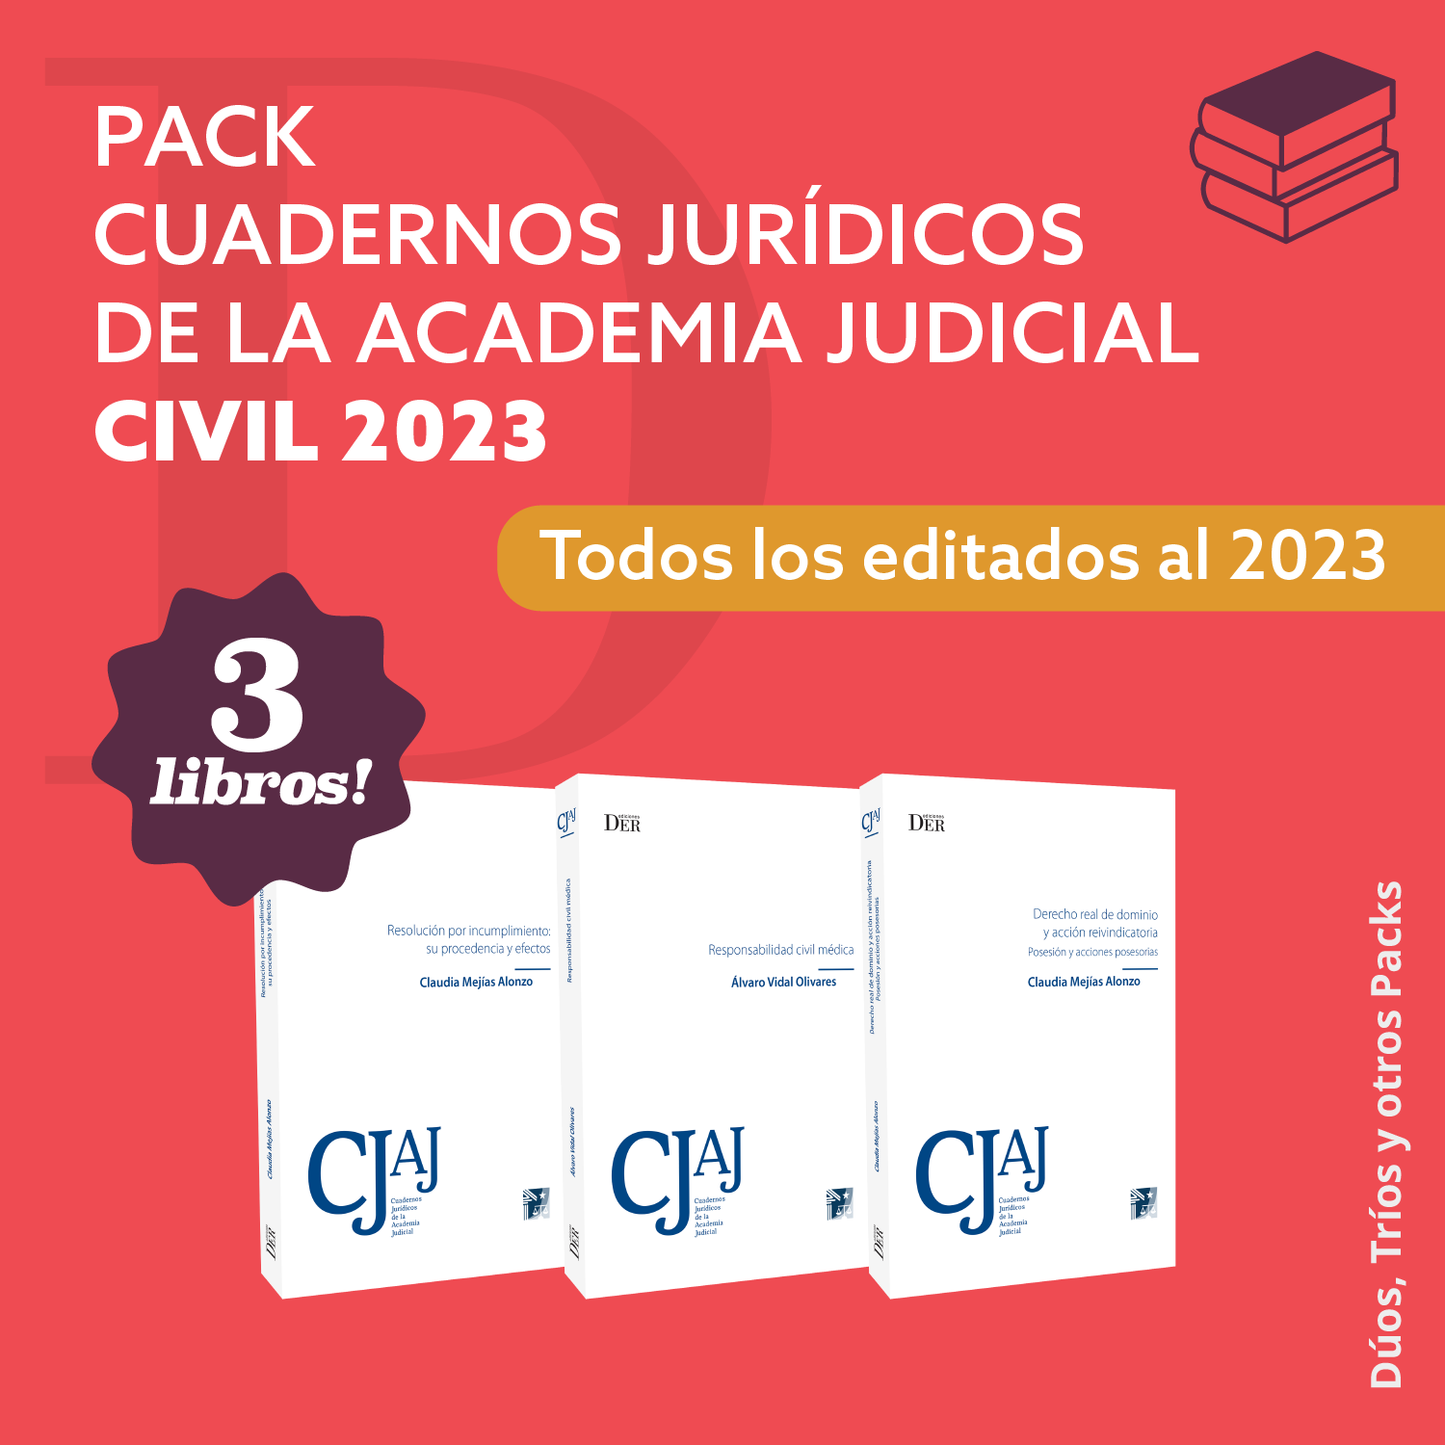 PACK CJAJ CIVIL 2023 (TODOS LOS EDITADOS AL 2023)